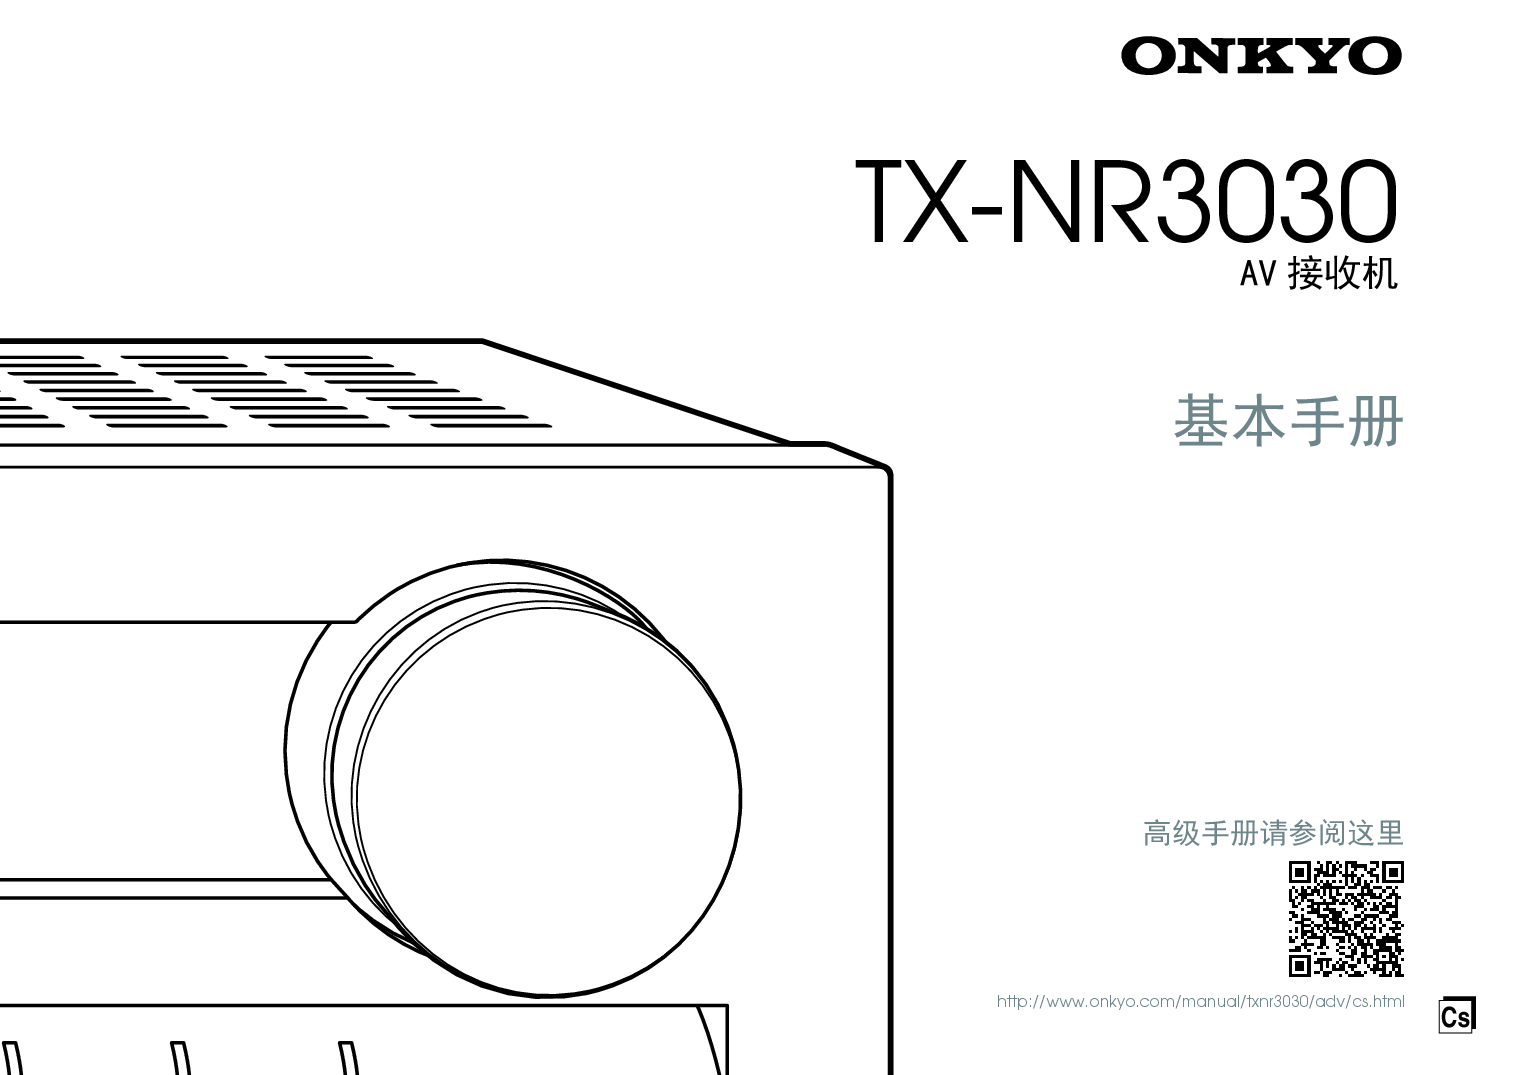 安桥 Onkyo TX-NR3030 基础使用手册 封面